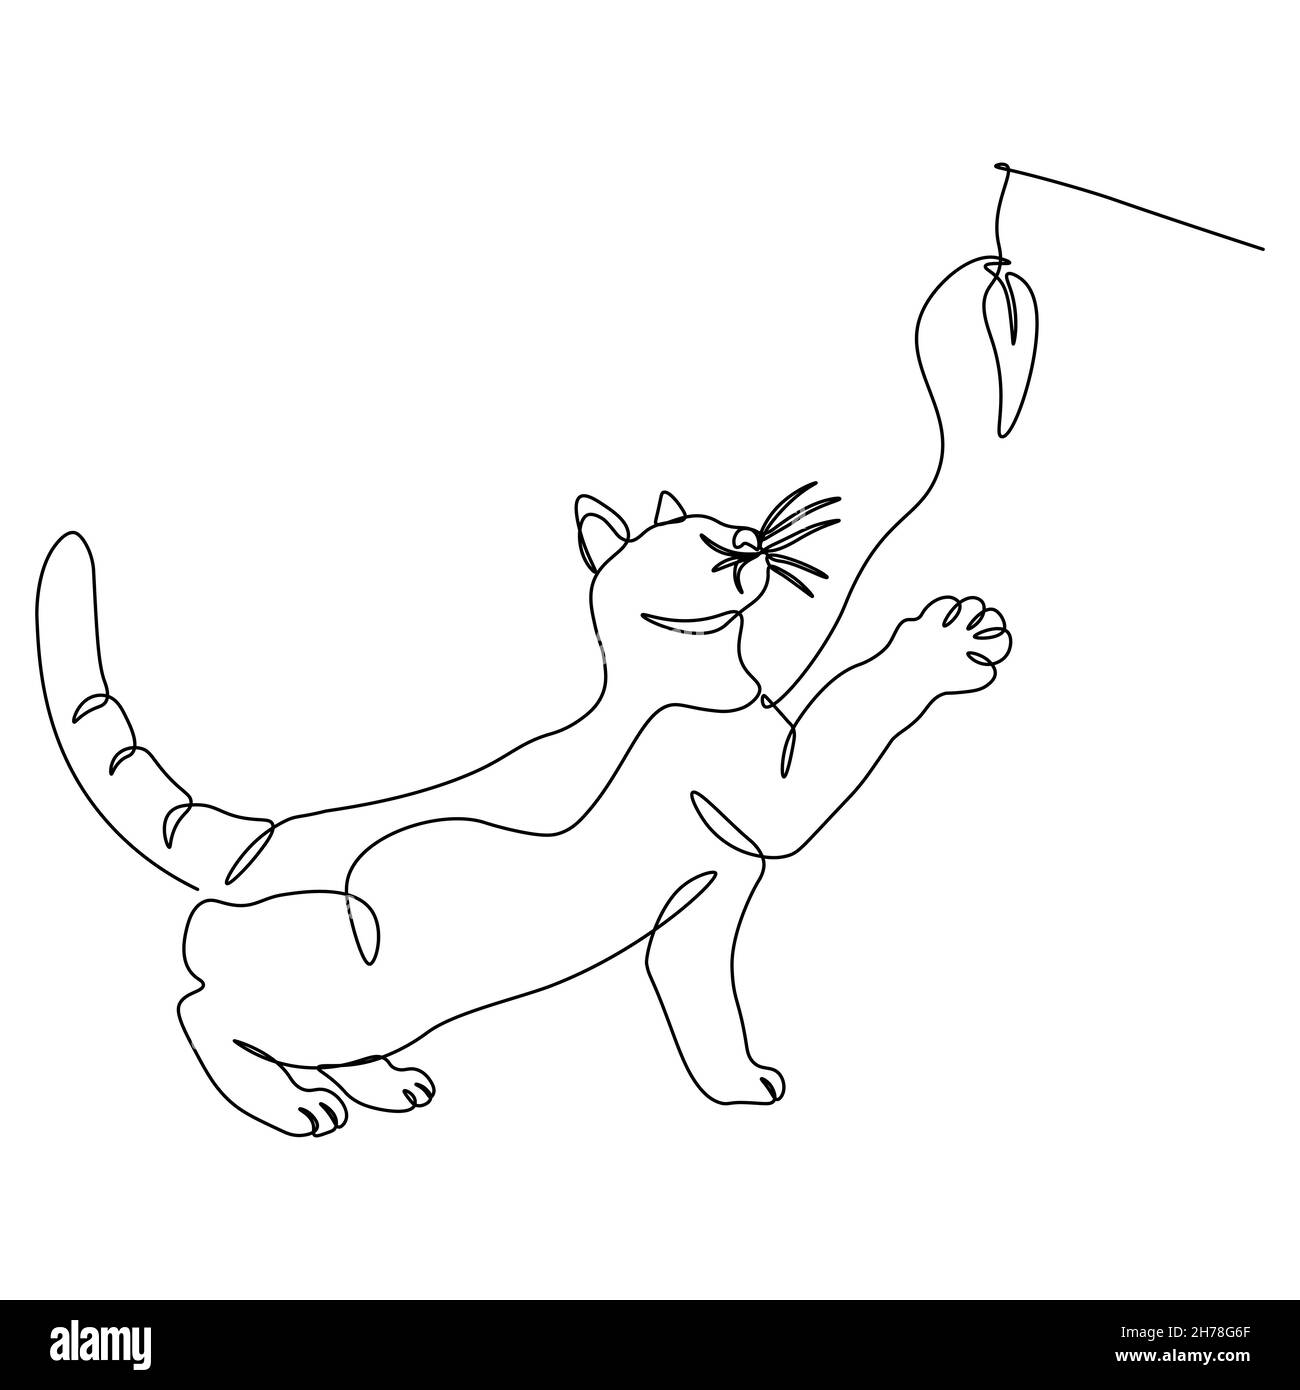 Le chat joue.Une ligne continue.Illustration vectorielle tracée avec une seule ligne. Illustration de Vecteur